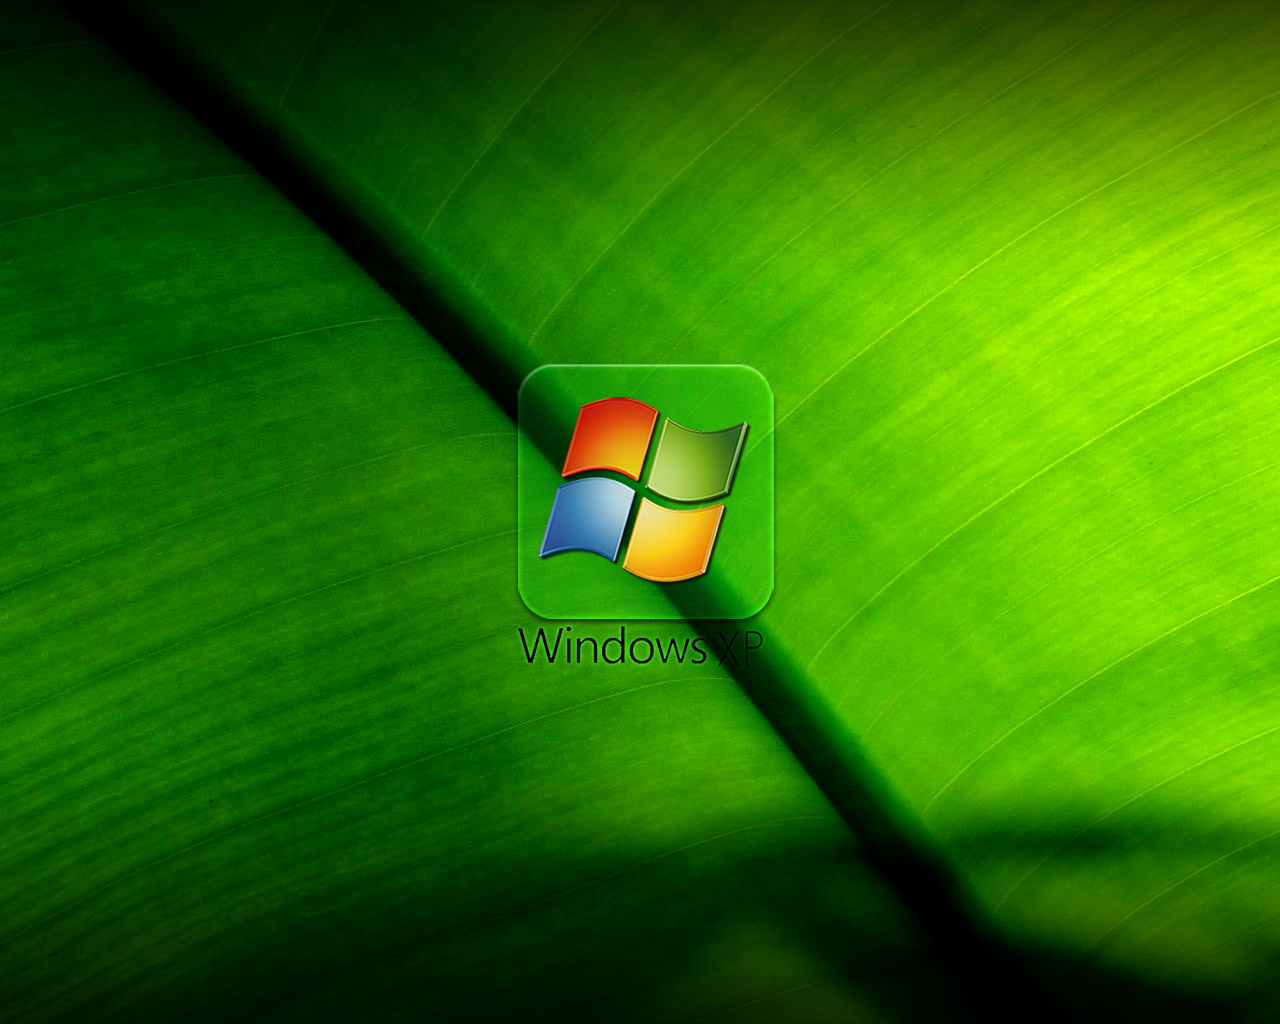 Windows XP is dead. Long live Windows XP 'Bliss': Digital HD wallpaper |  Pxfuel